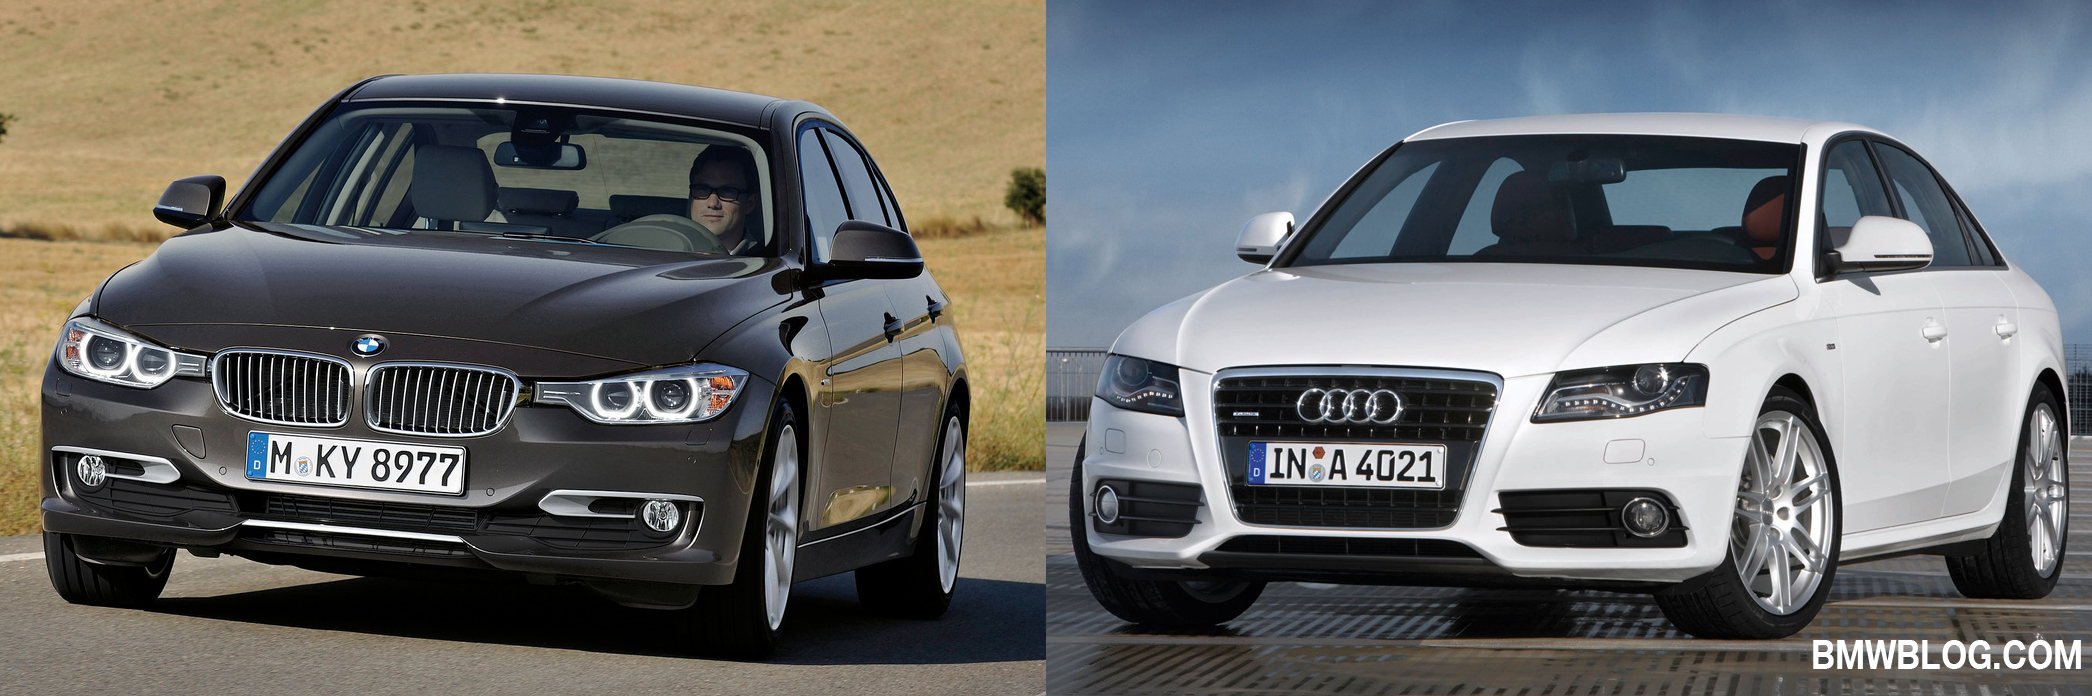 Khi so sánh xe ô tô hạng sang, không thể bỏ qua BMW 3- Series và Audi A4